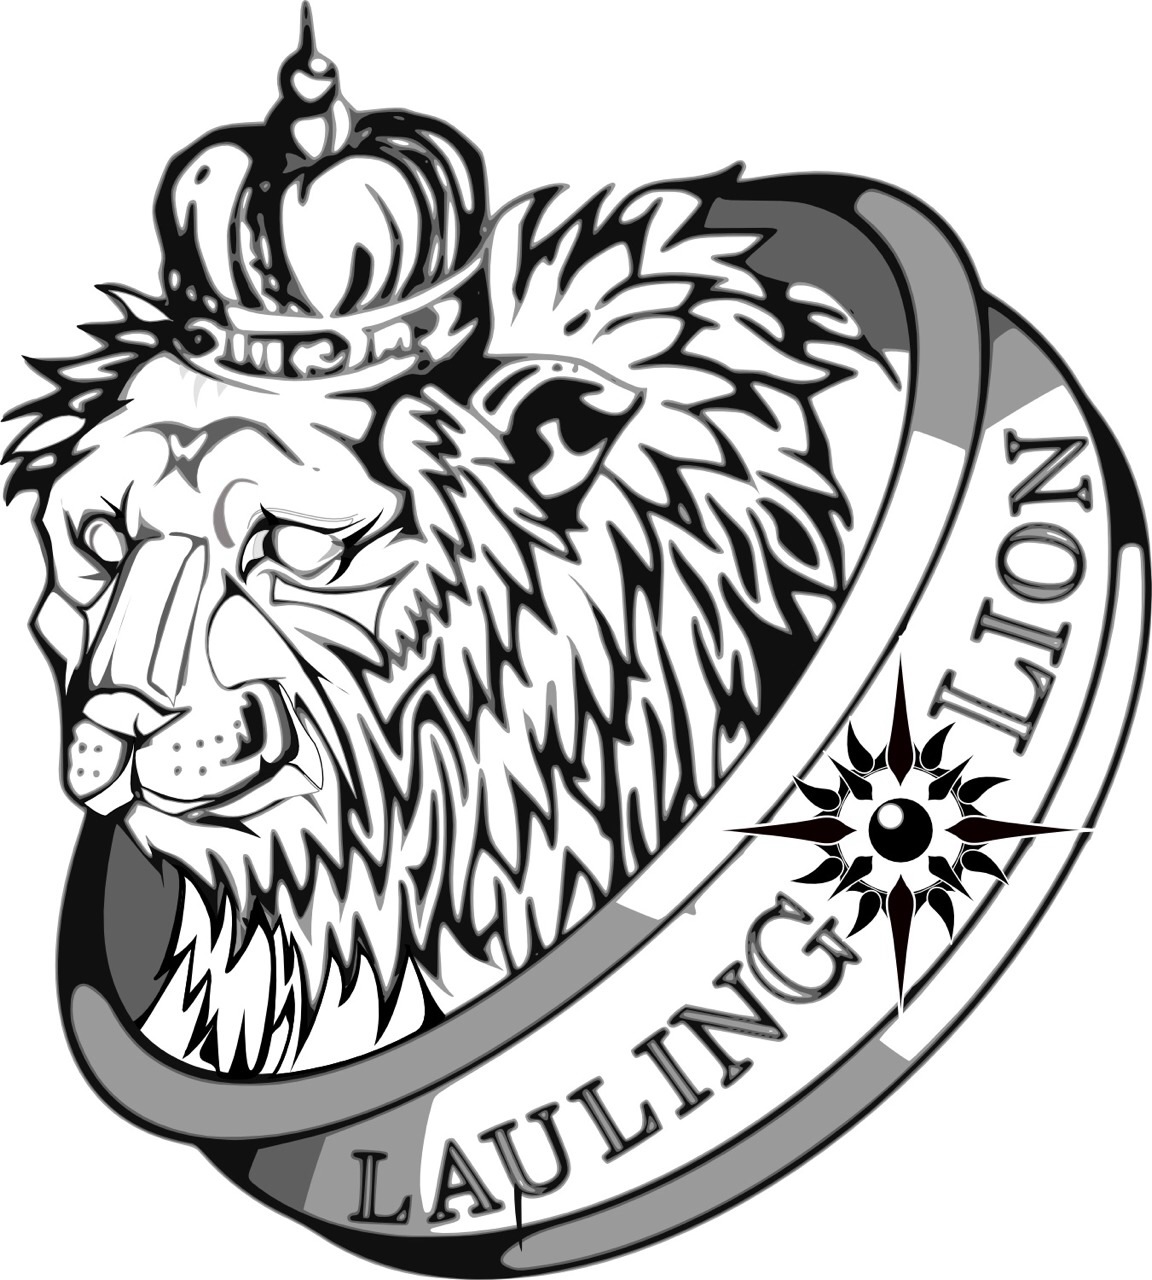 LAULING LION【ラウリングリオン】